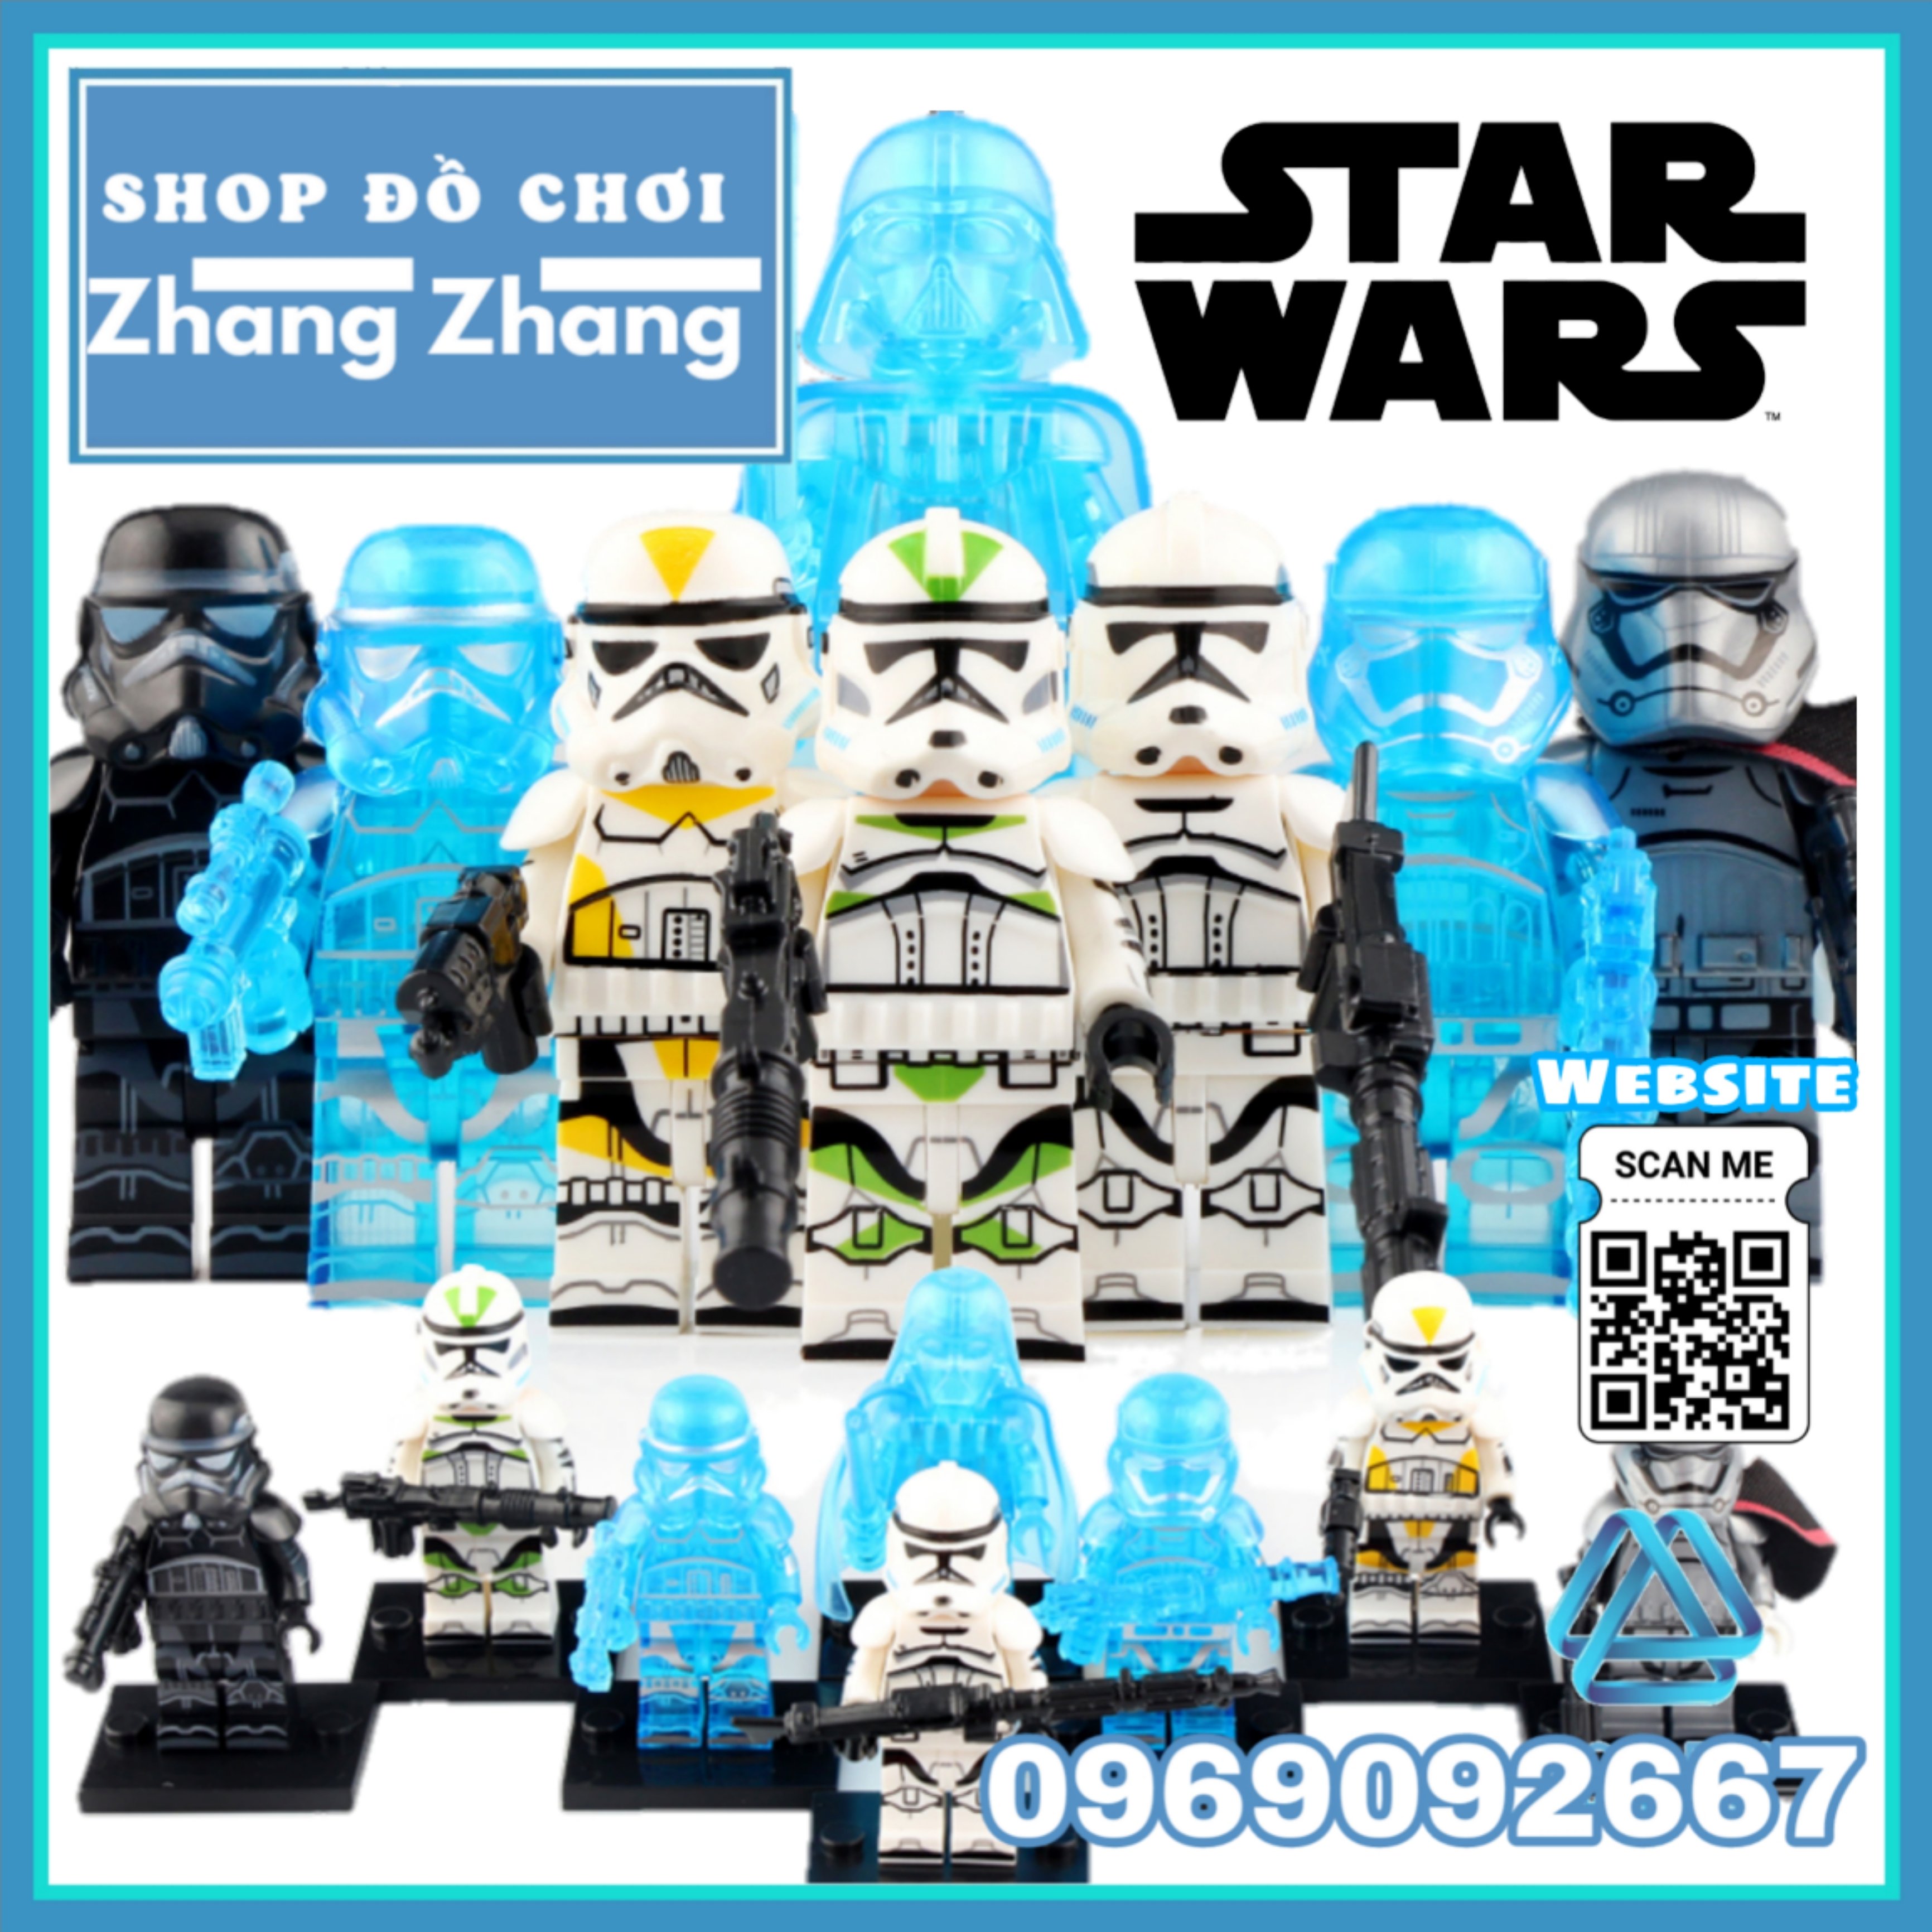 [FREESHIP MAX] Đồ chơi Xếp hình Star Wars Stormtrooper - Captain Phasma - Clone Trooper - Darth Vader Lego Minifigures Koruit KT1035 [Shop Đồ Chơi Zhang Zhang]